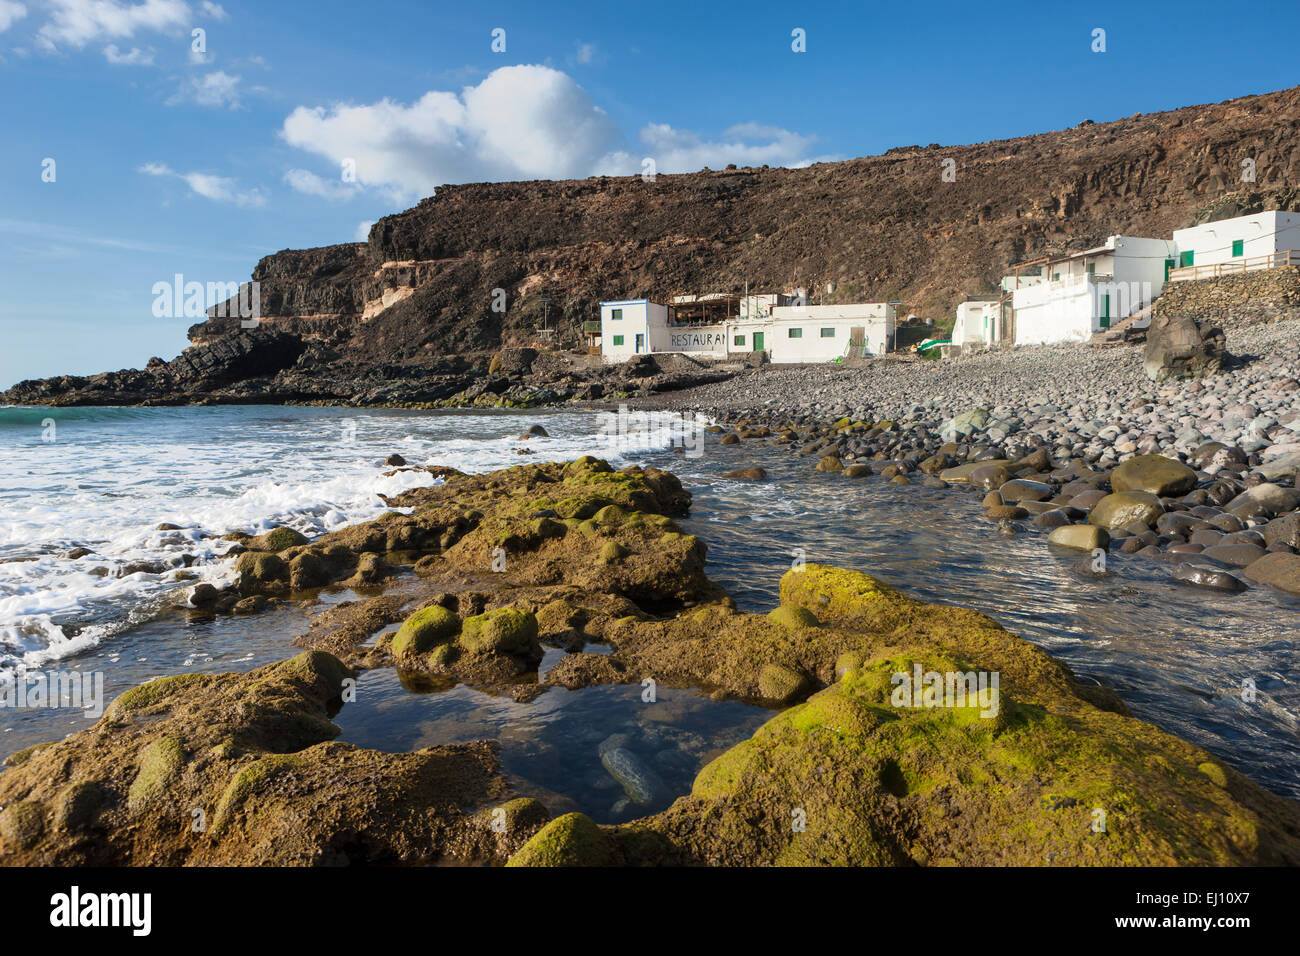 El Puertito de los Molinos, Spagna, Europa, isole canarie Fuerteventura, costa, case, case, ristorante, rock, Cliff, pietre Foto Stock